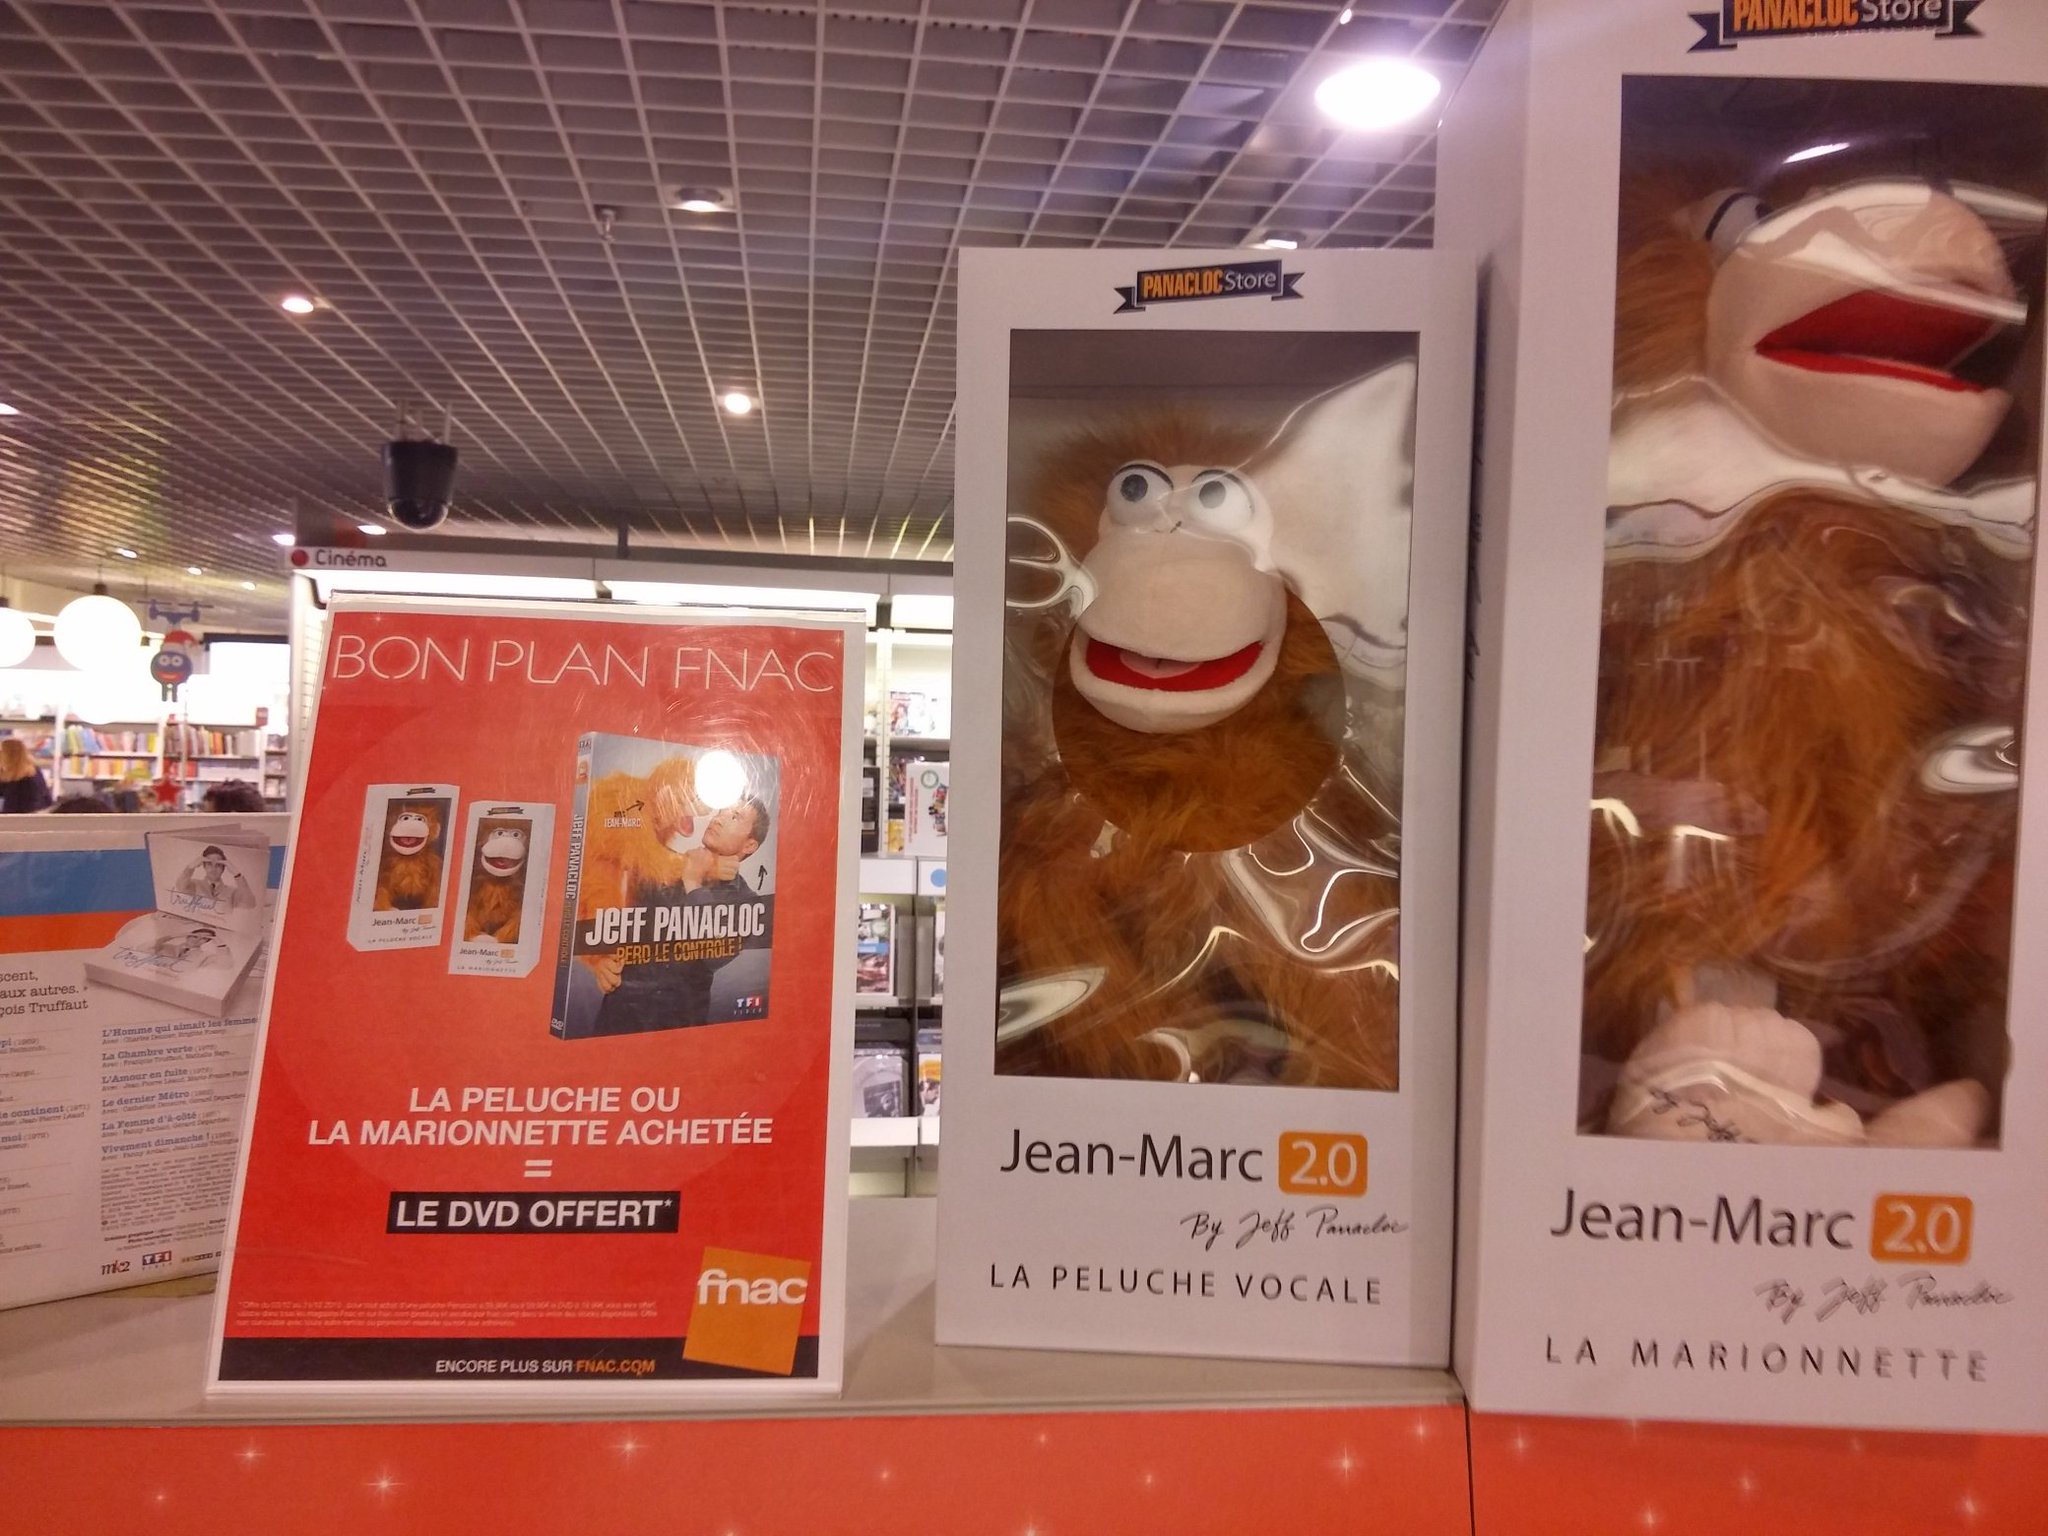 Brice Hébert on X: Bon plan @Fnac: la peluche ou la marionnette de # JeanMarc achetée = le DVD de @Jeffpanacloc offert ! #ilestcontent   / X